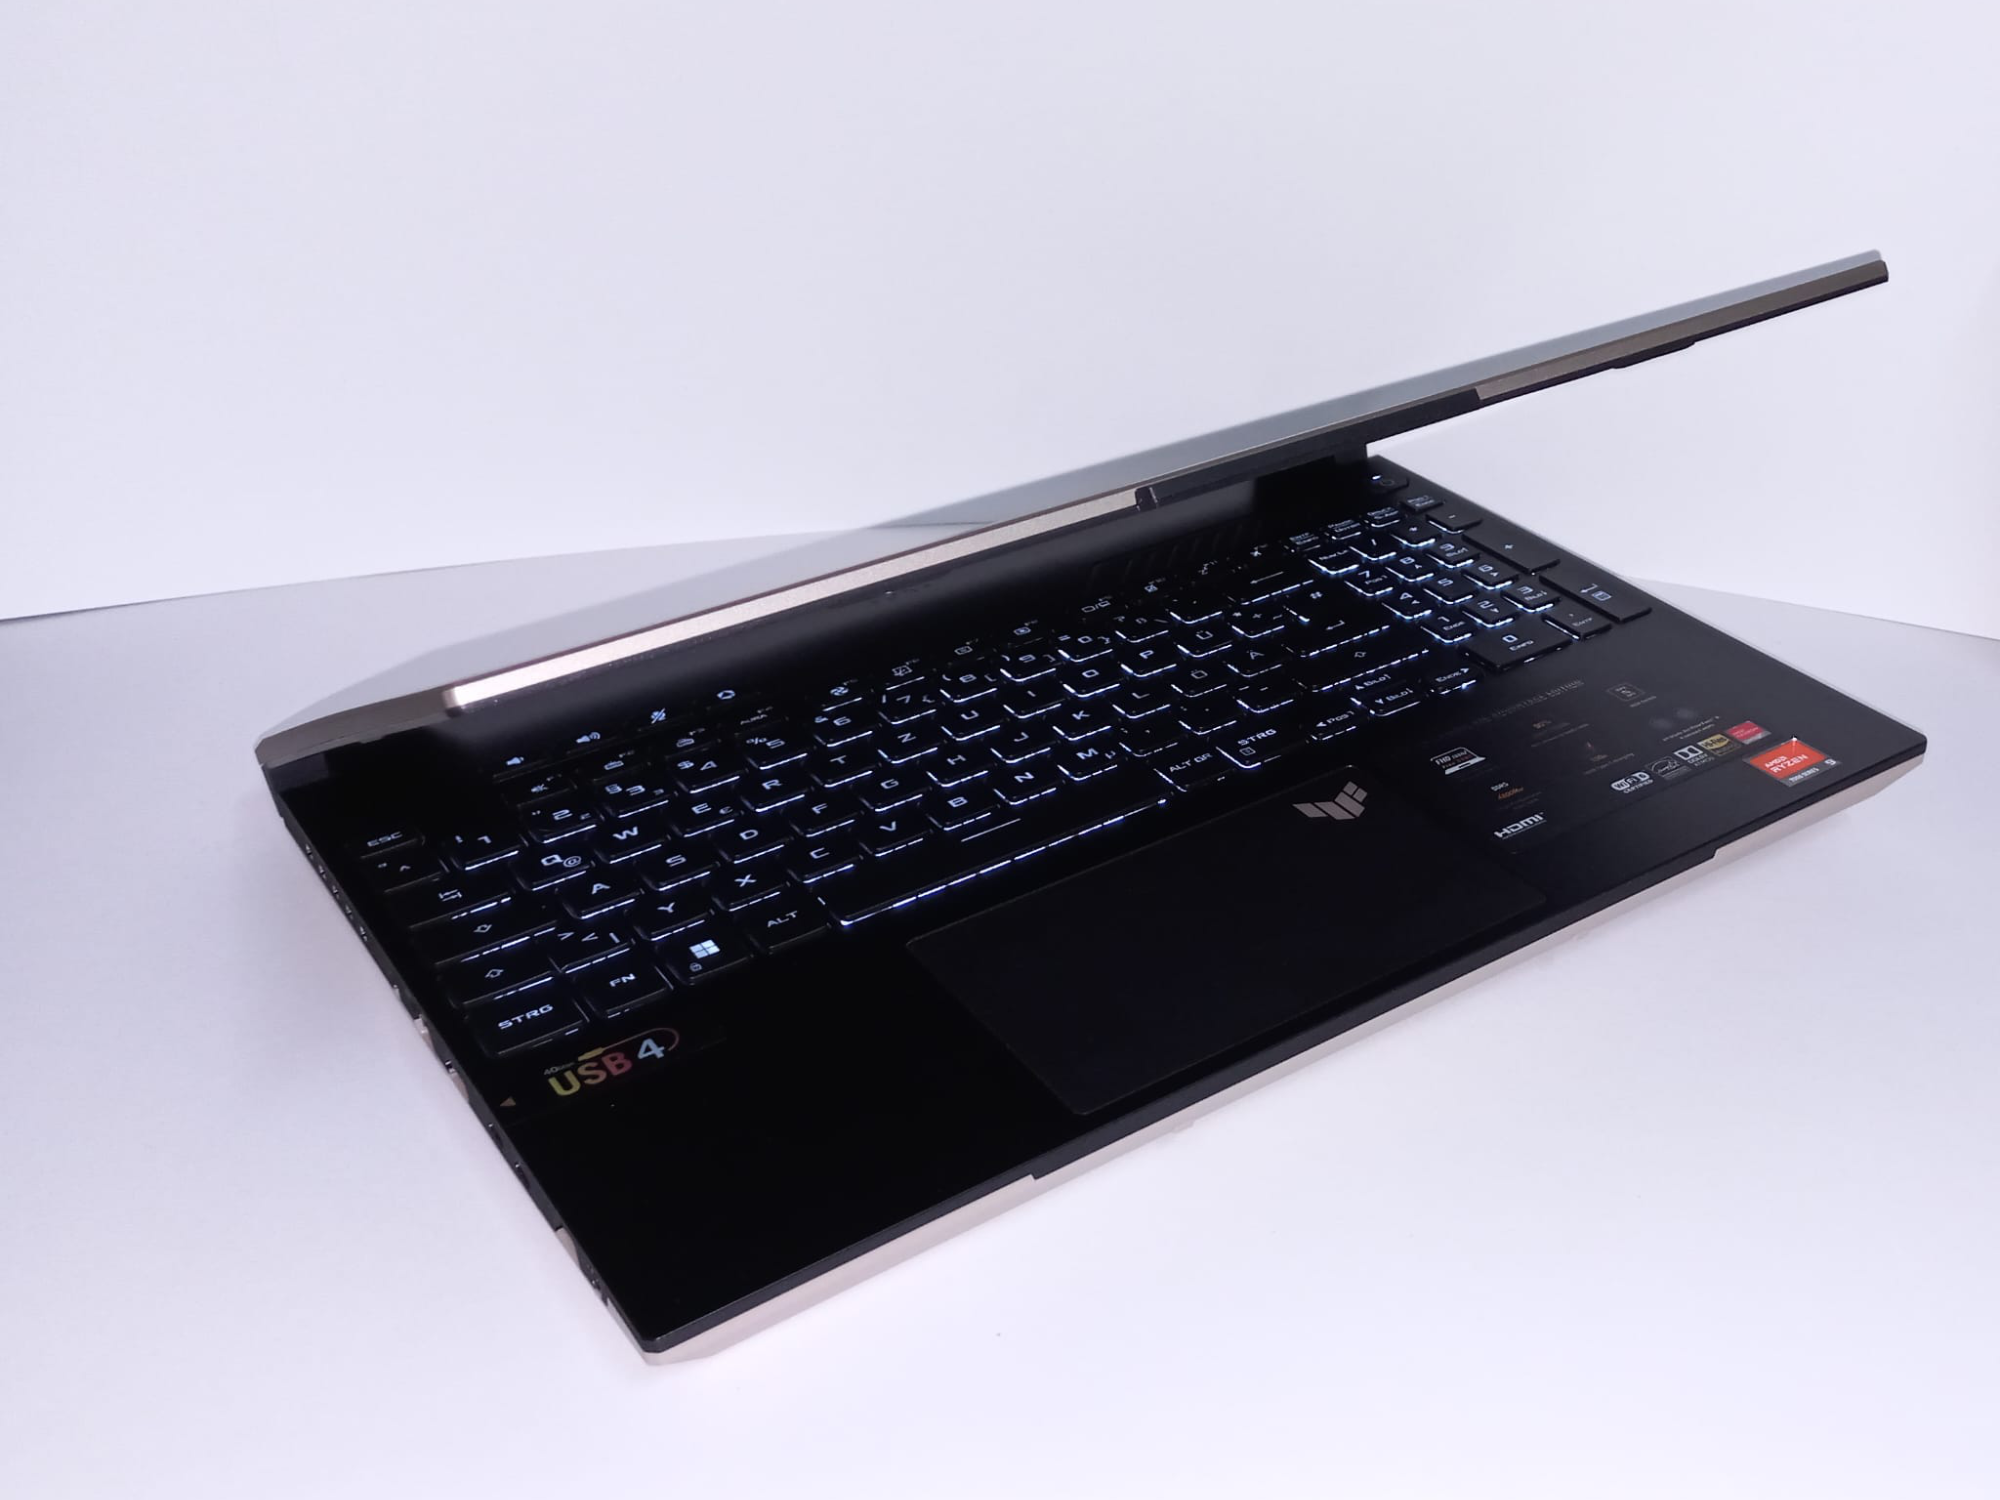 #Zocker-Laptop im Gaming-Test: Wir haben das Asus TUF Gaming A16 auf die Probe gestellt